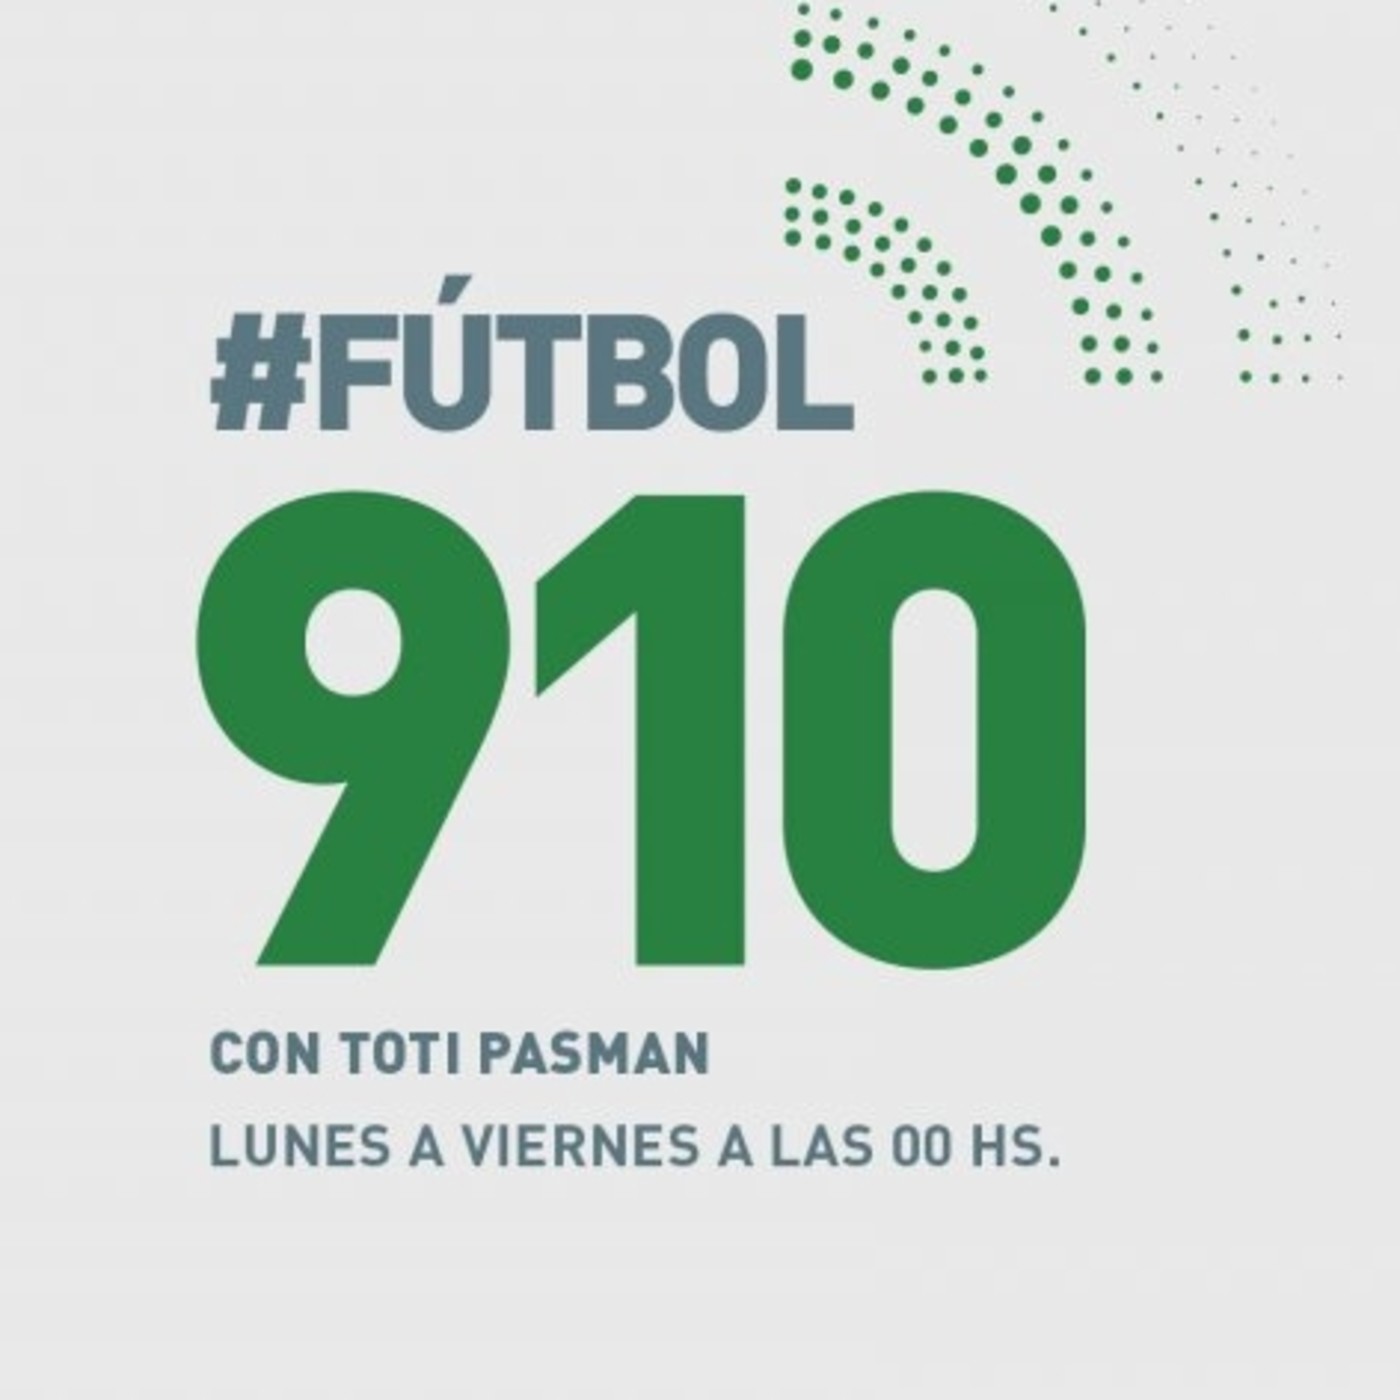 Futbol 910